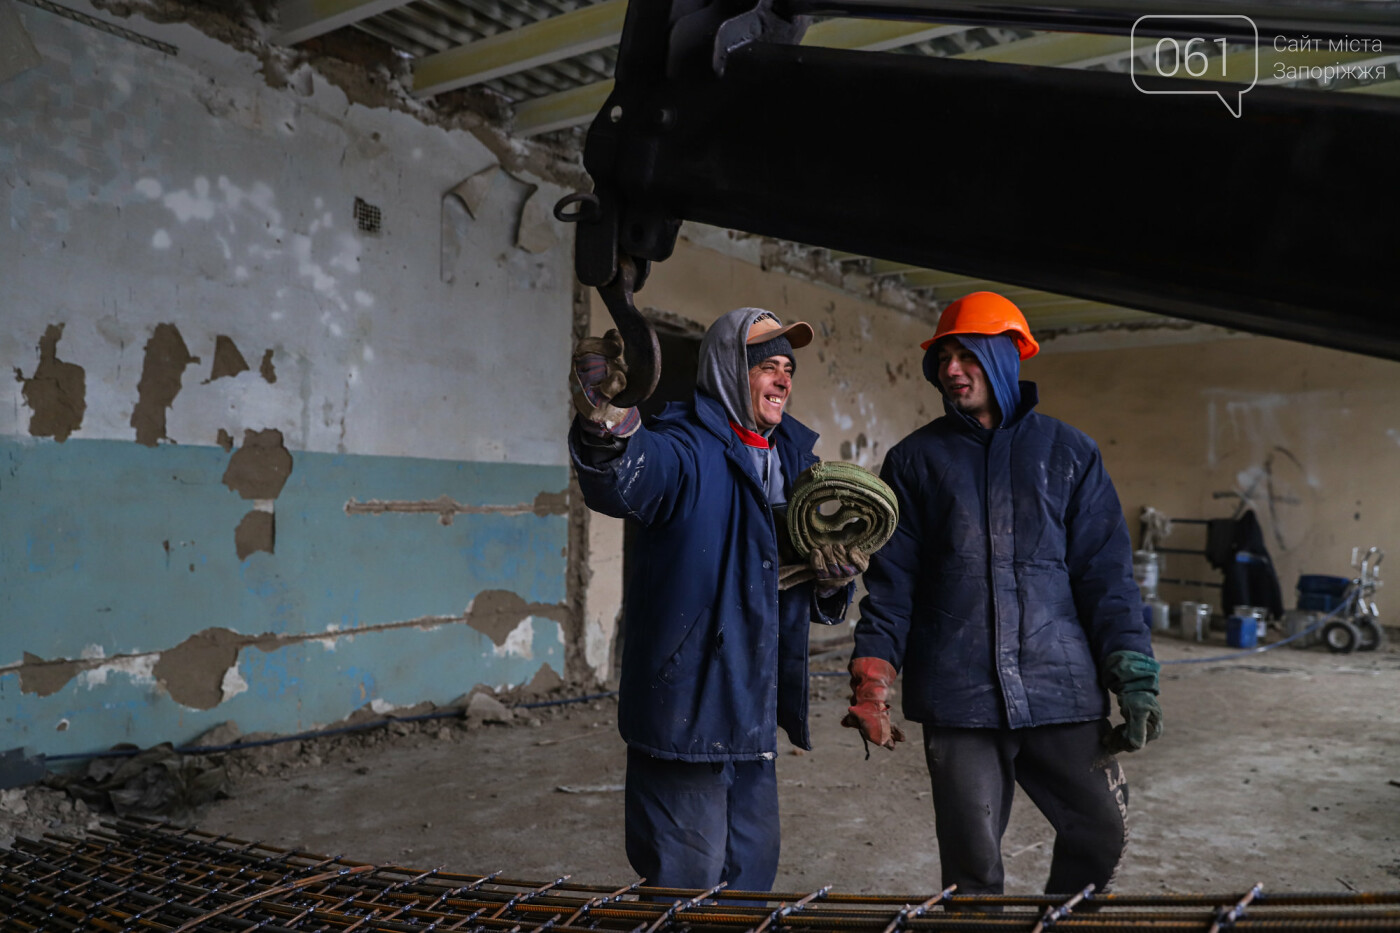 В Запорожье восстанавливают школу, которая пострадала во время масштабного пожара 5 лет назад, - ФОТОРЕПОРТАЖ , фото-35